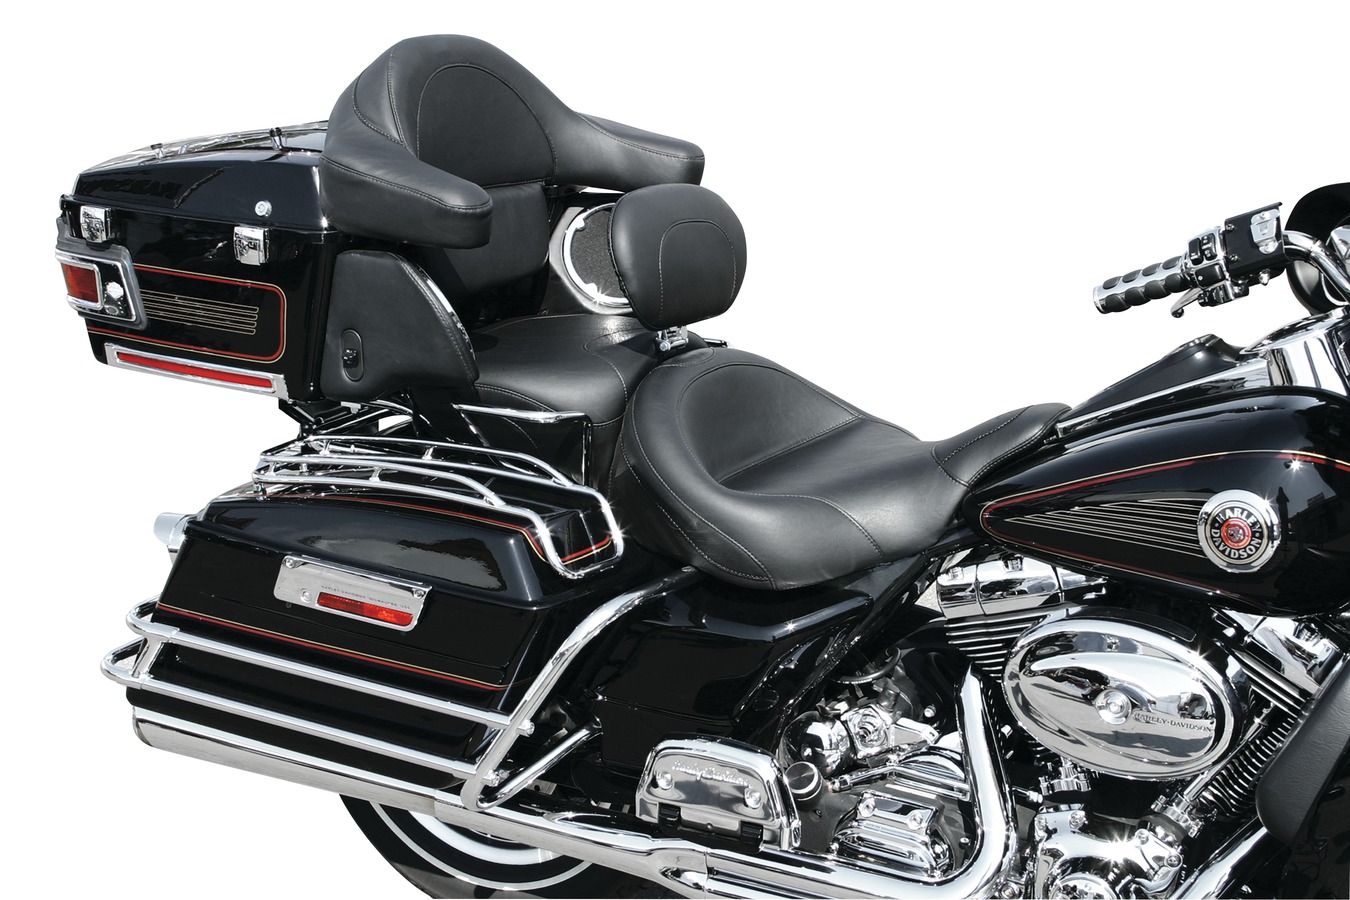 Driver Backrest Kit for Harley-Davidson FL Touring | Motorcycle